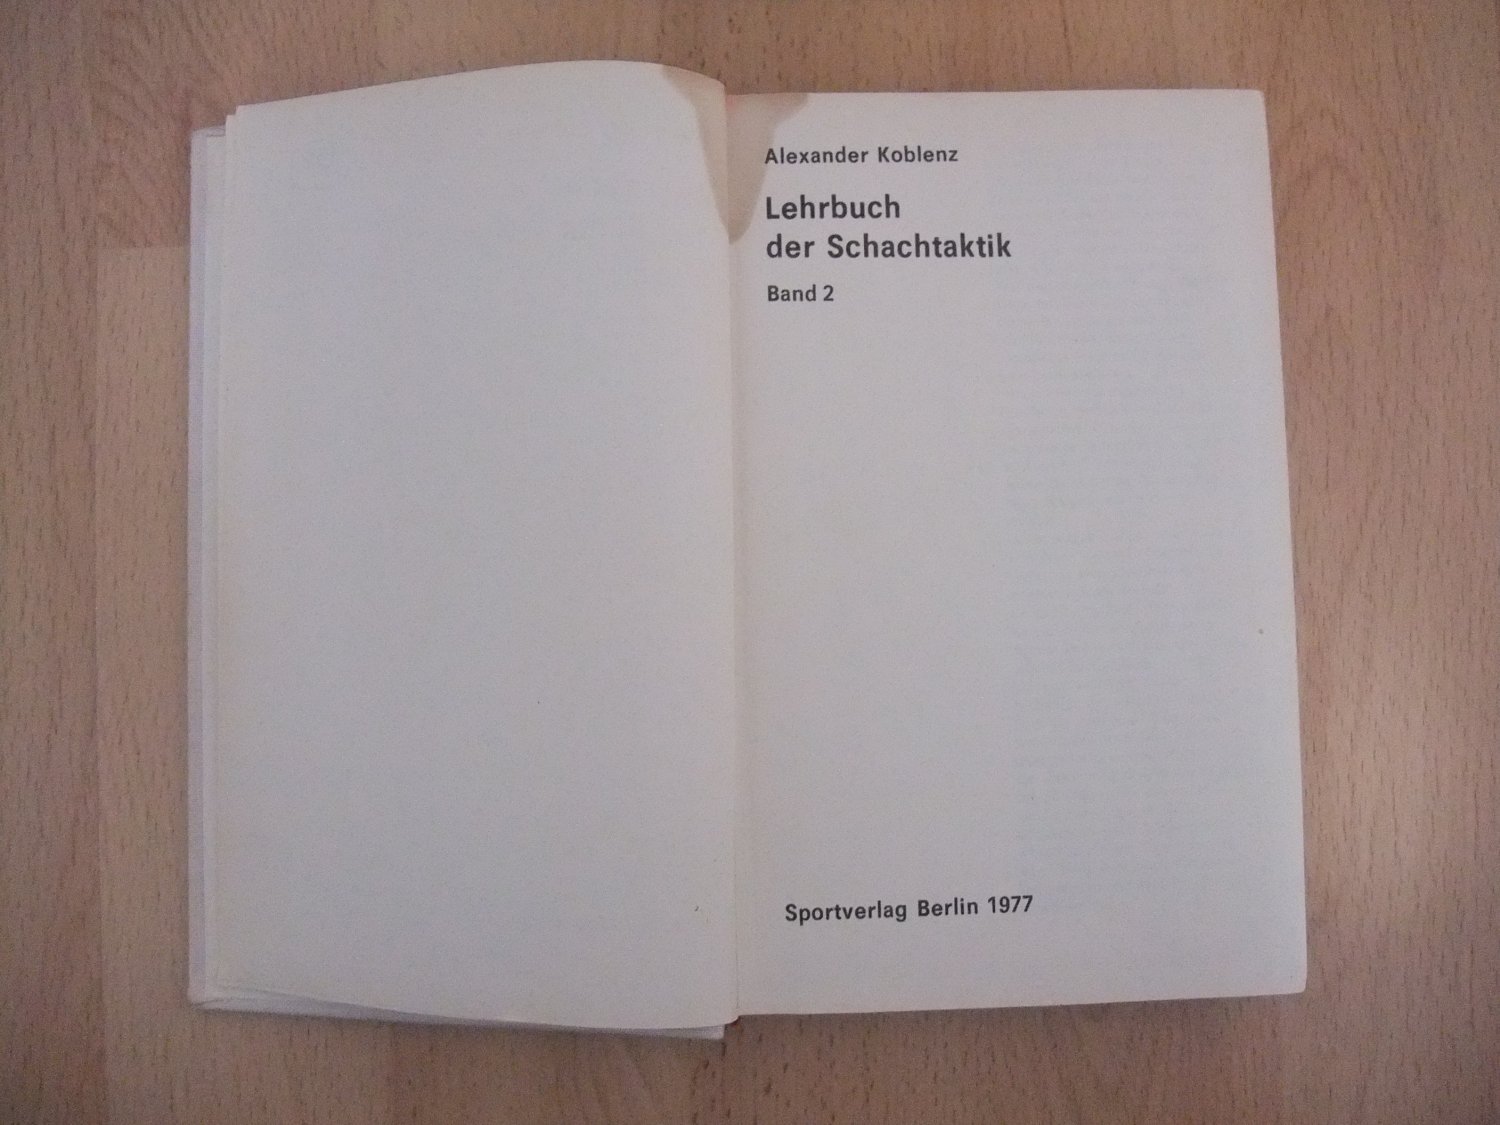 Lehrbuch der Schachtaktik Band 2“ (alexander Koblenz) – Buch gebraucht kaufen